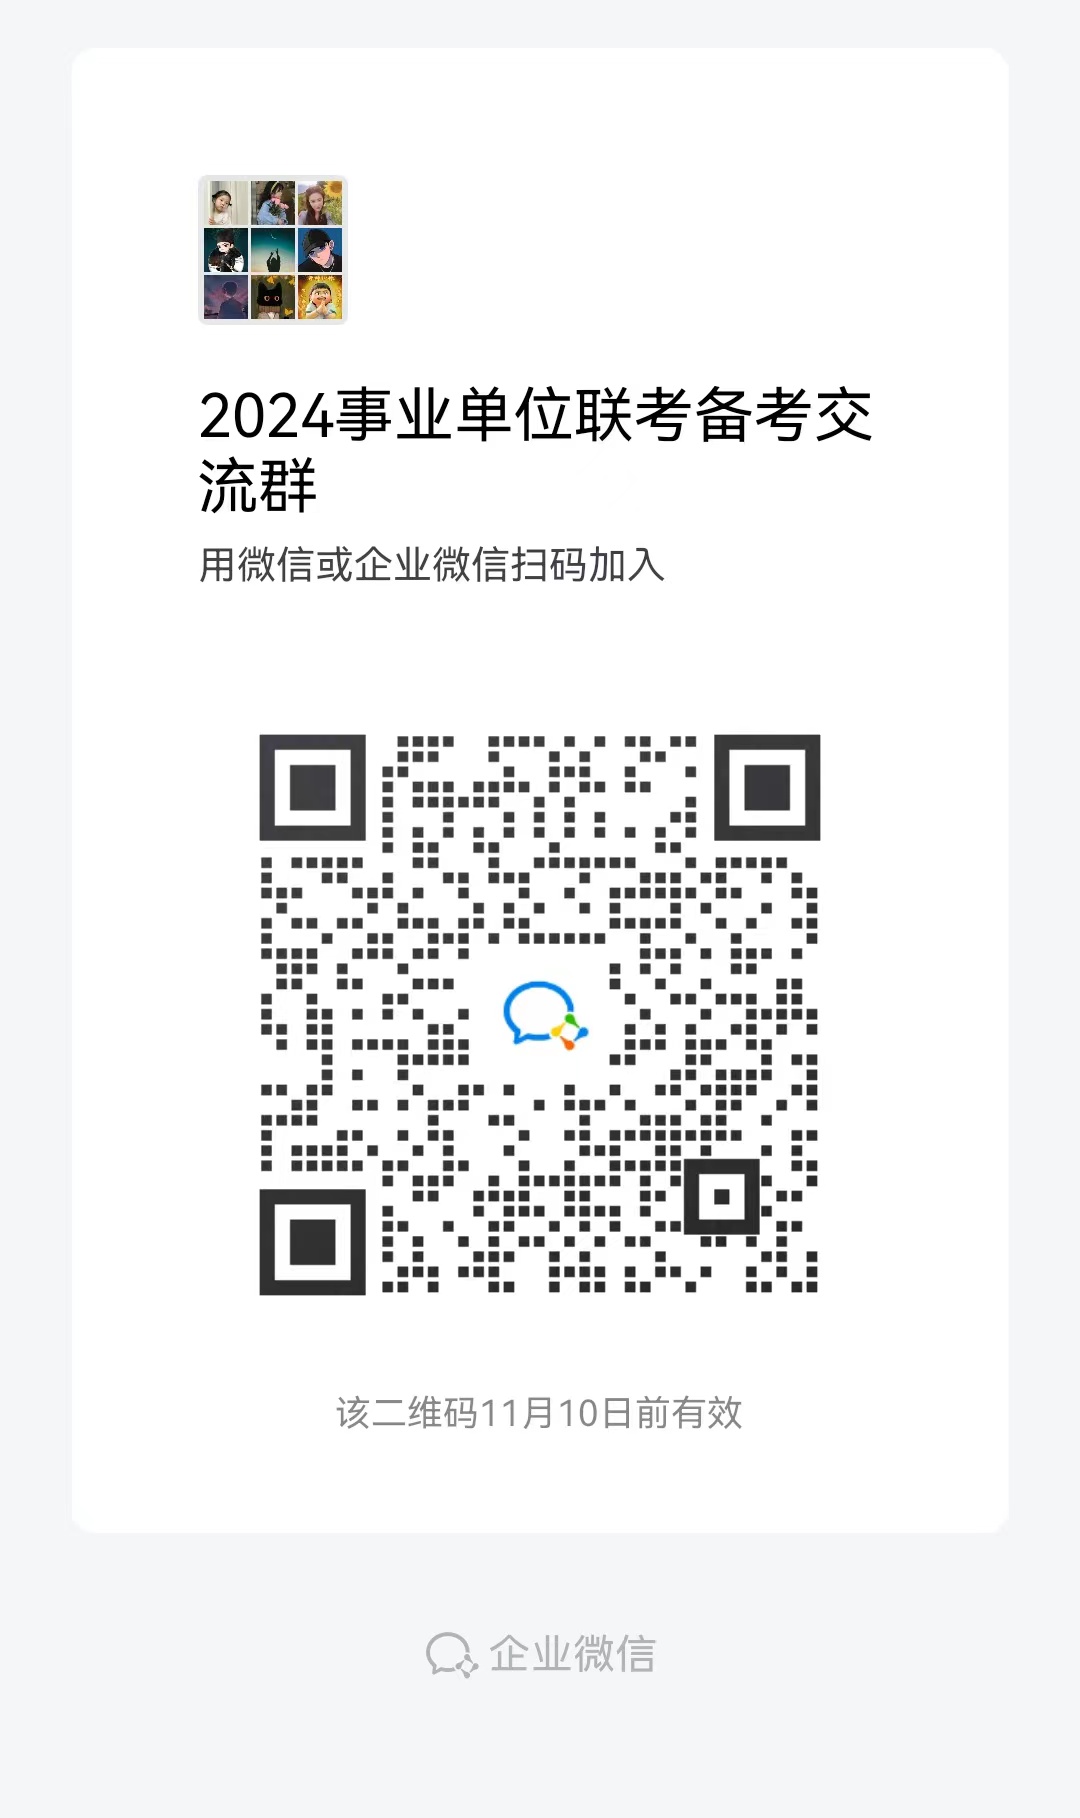 2023年荆州松滋市事业单位招聘工作人员27人公告